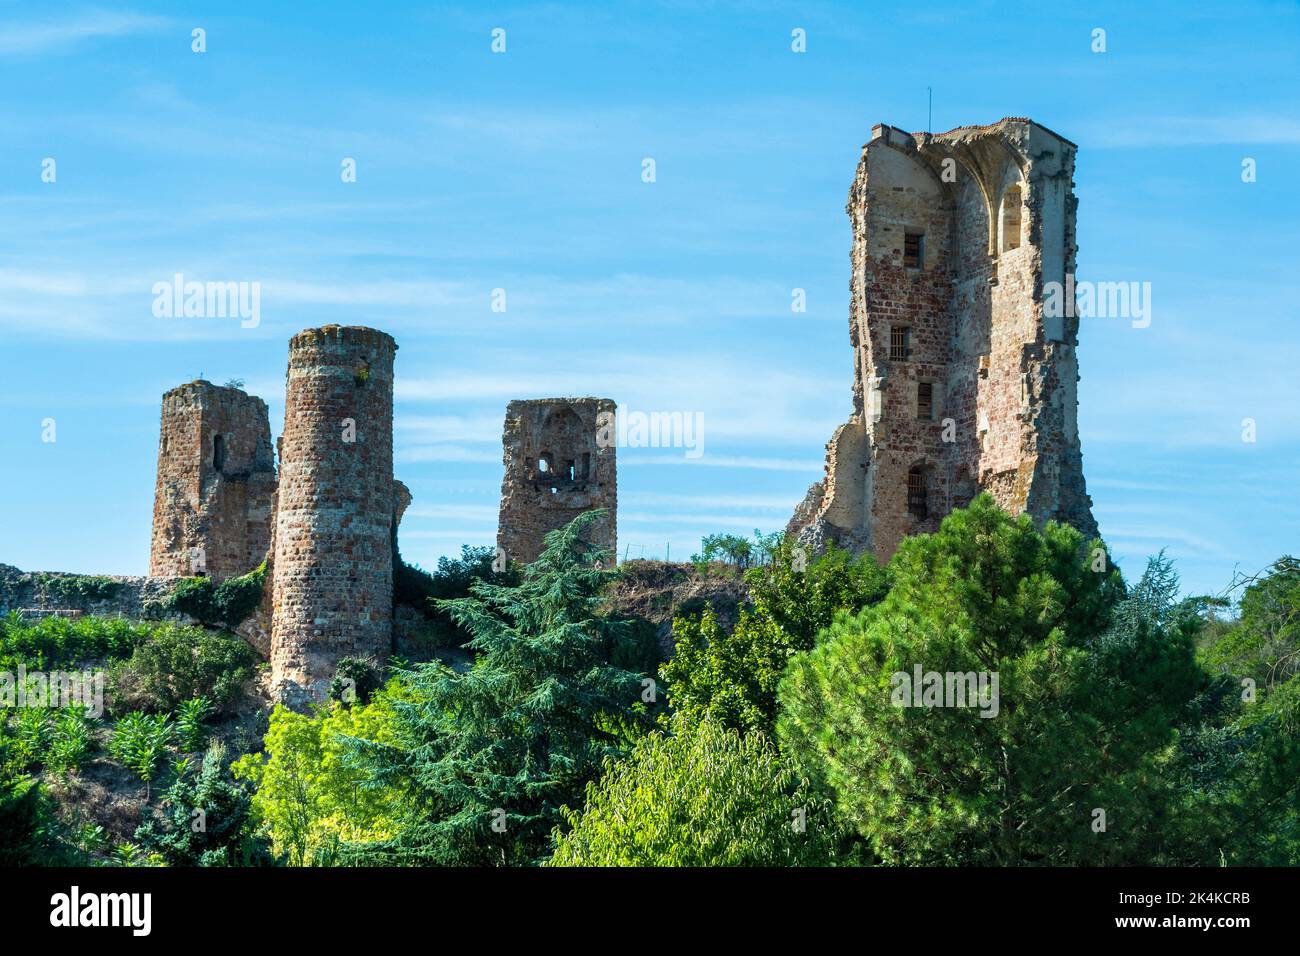 Herisson bezeichnete die kleine Stadt des Charakters. Blick auf die Türme der Festung Ducs de Bourbon. Allier-Abteilung. Auvergne Rhone Alpes. Frankreich Stockfoto